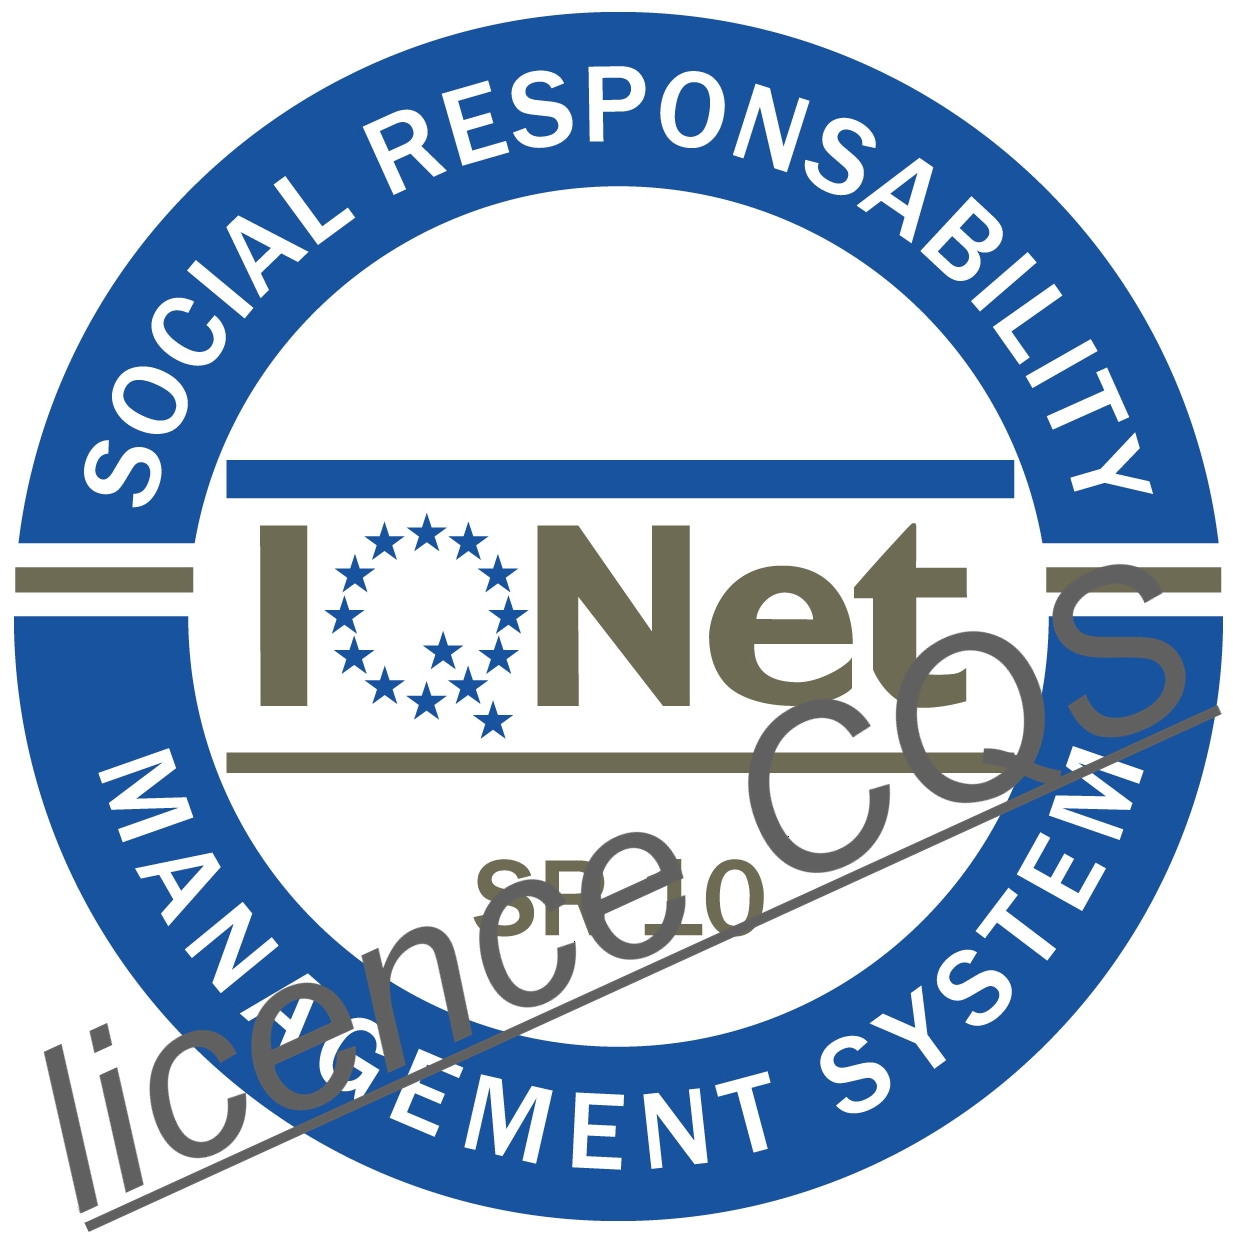 1. ocenění v ČR certifikátem CSR – systém managementu společenské odpovědnosti